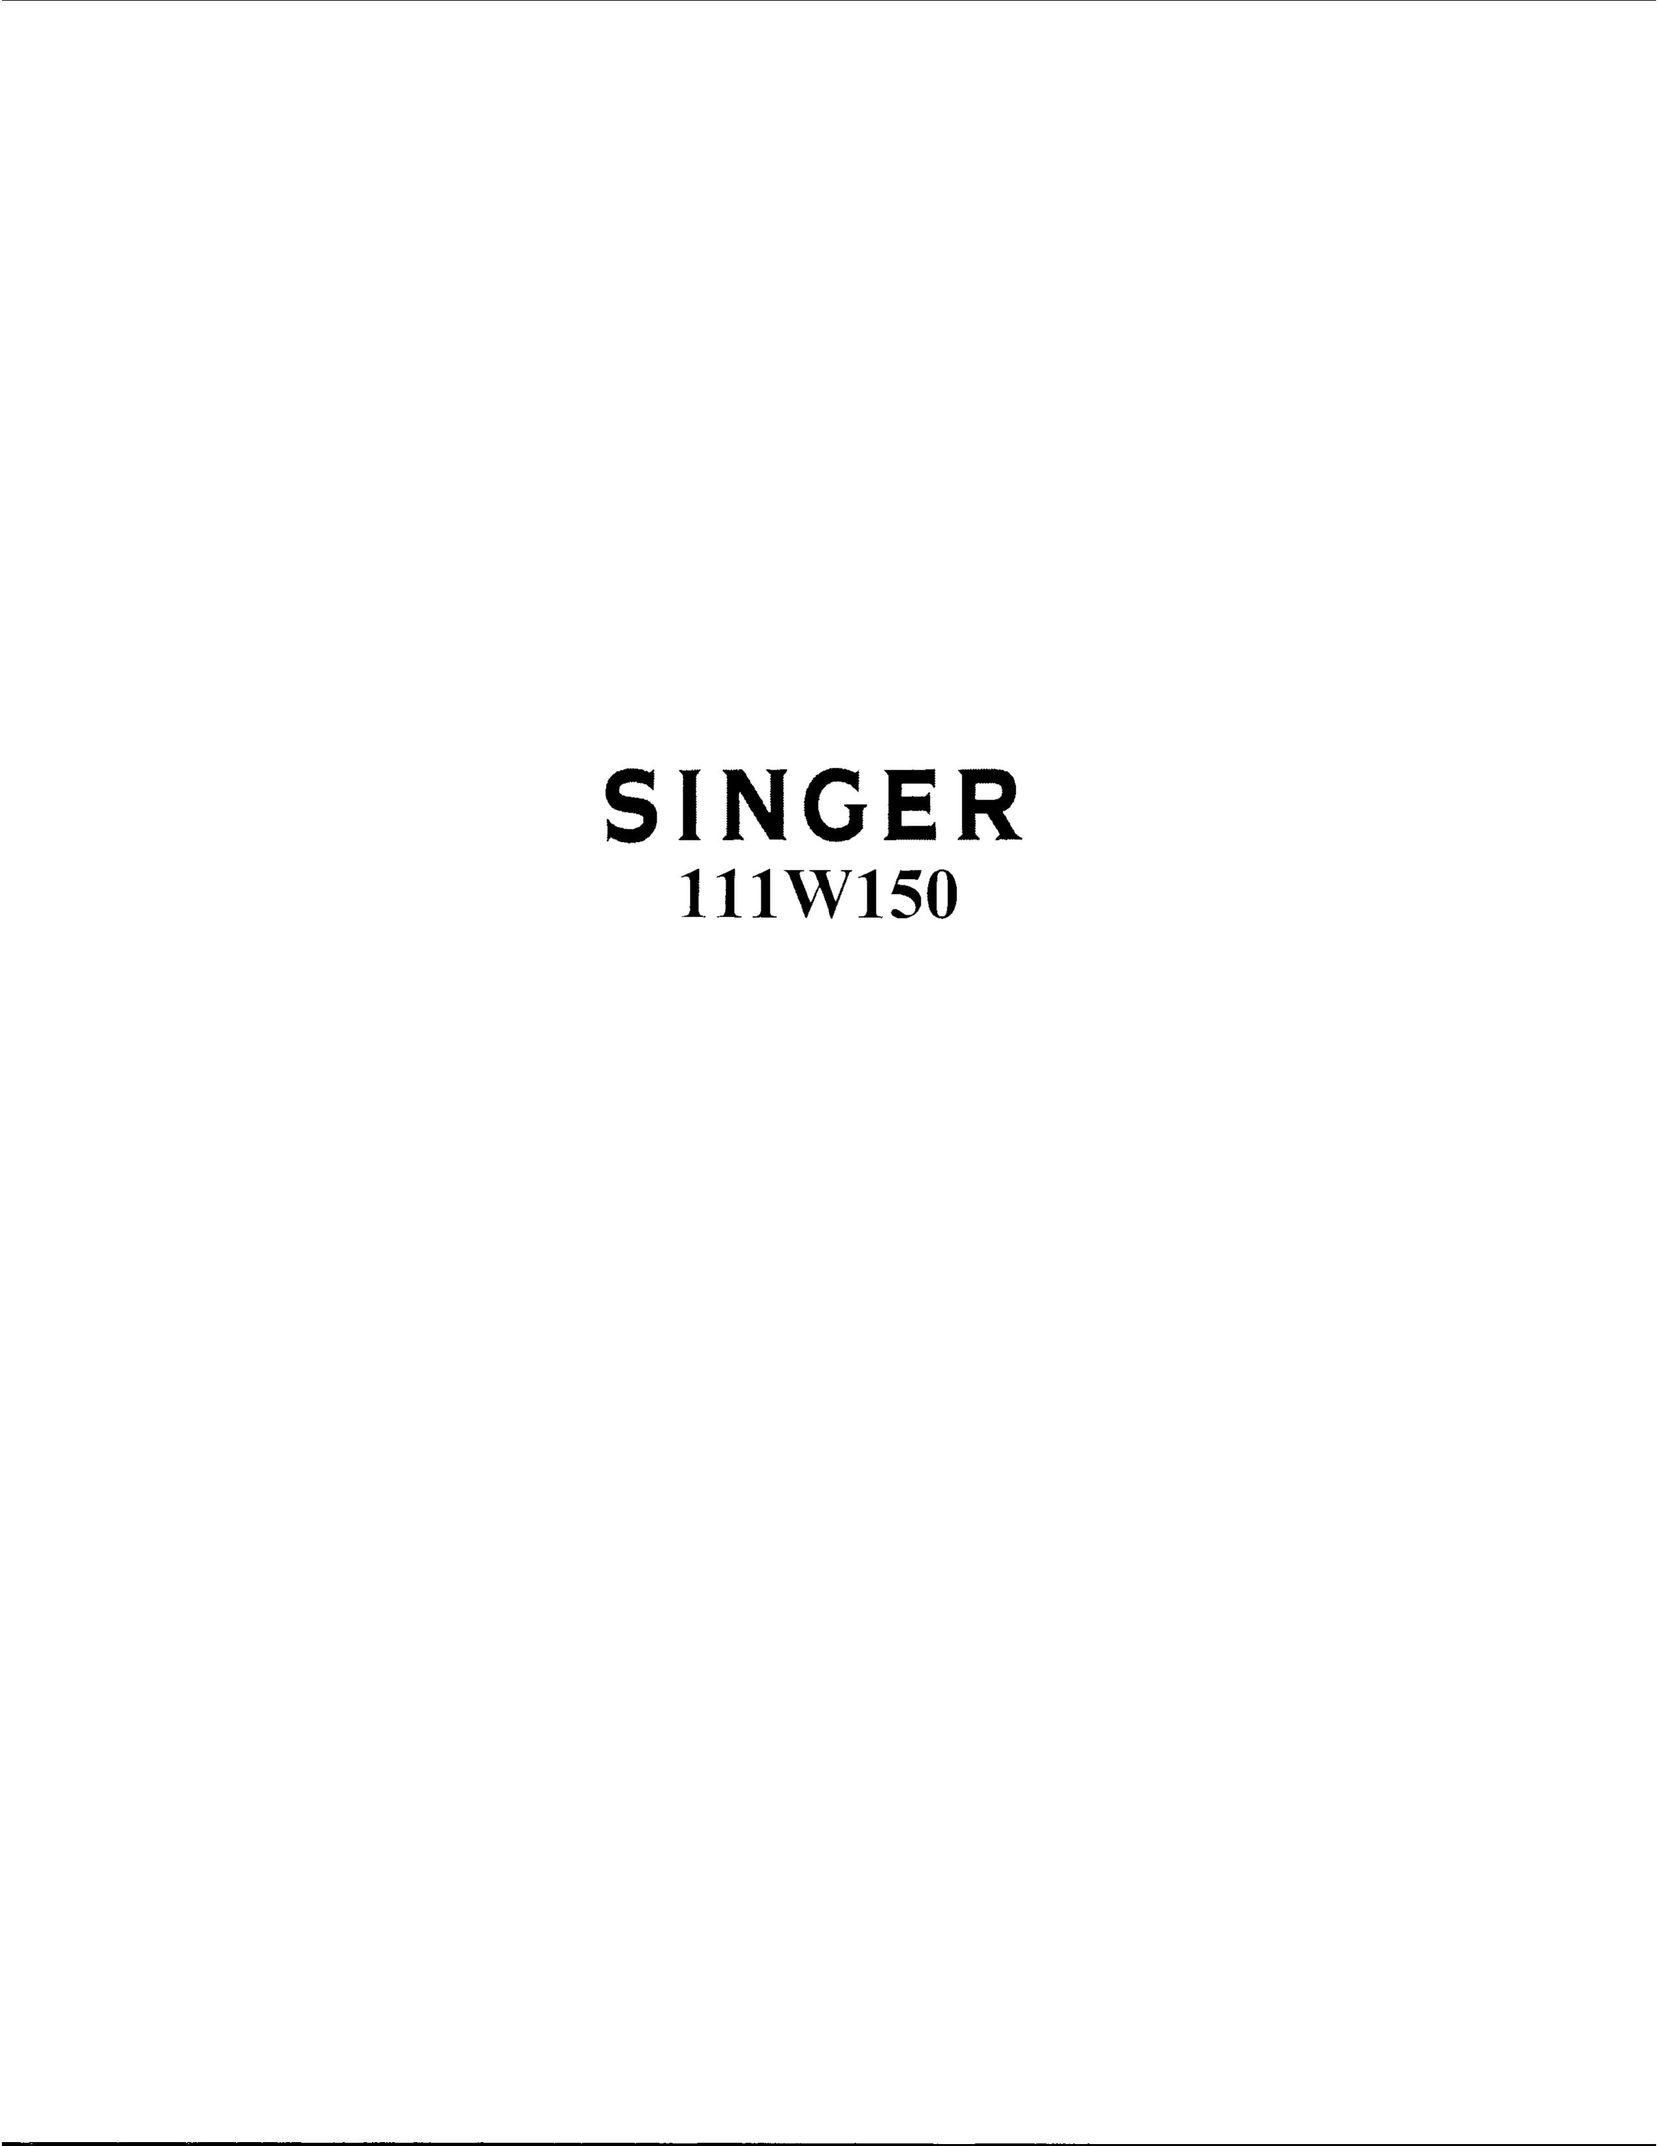 Singer 111W150 Sewing Machine User Manual